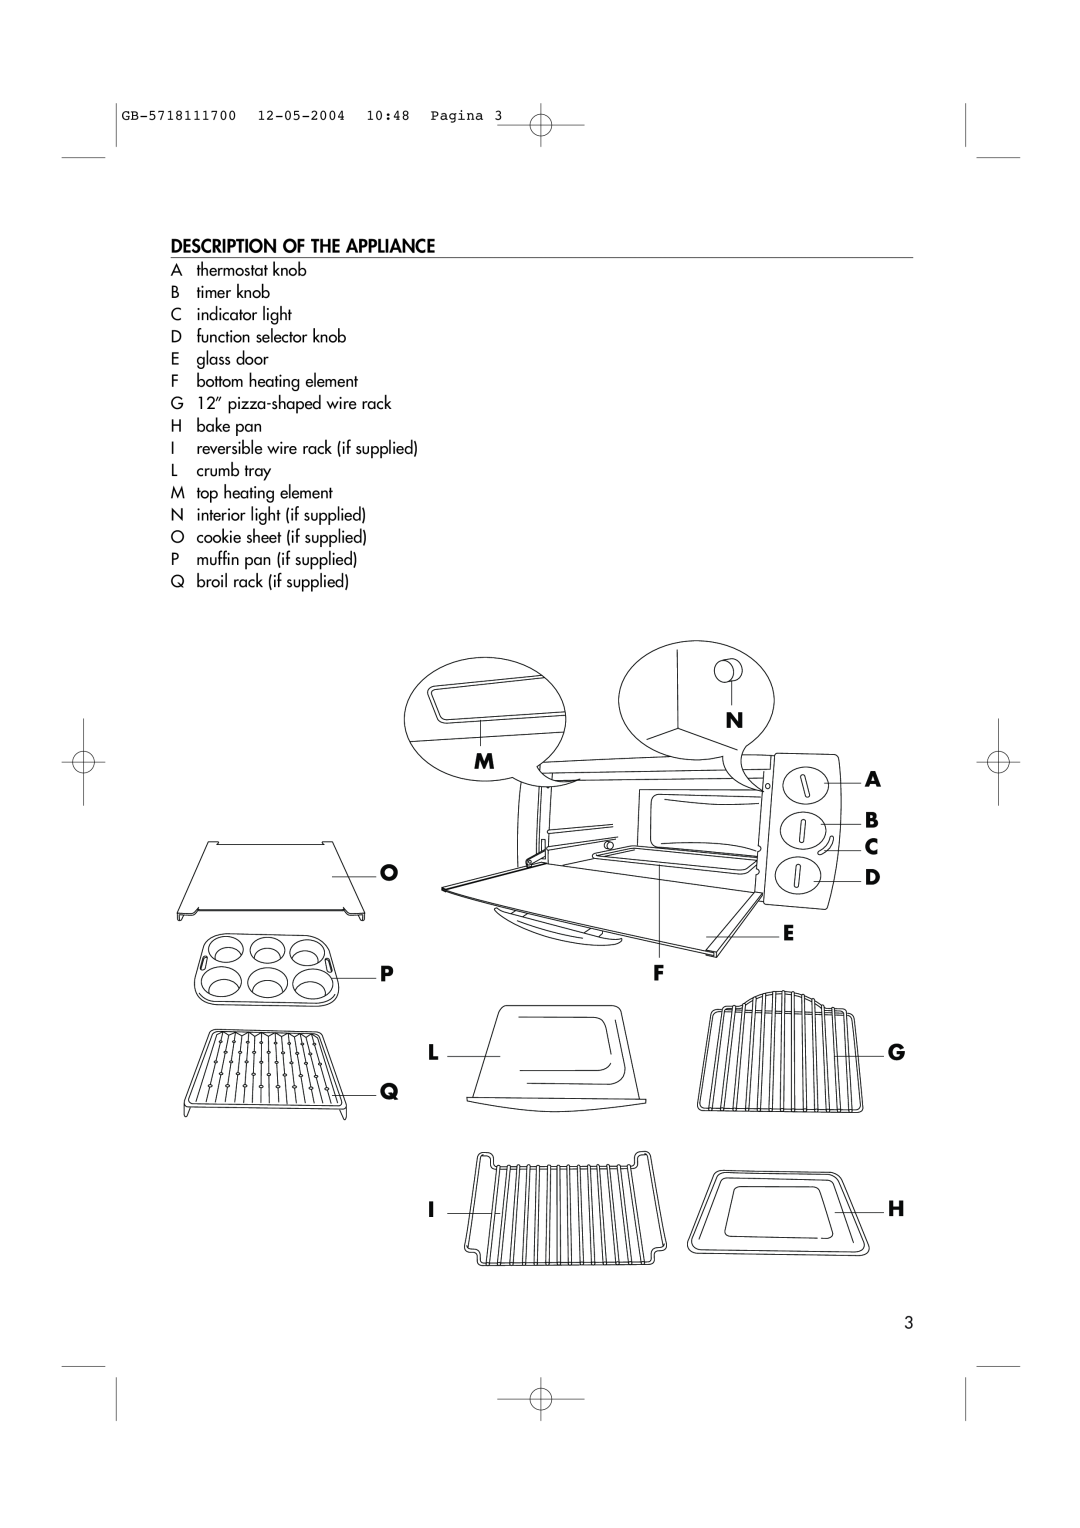 DeLonghi EO1200 Series manual N M A B C, E Pf Lg Q Ih, Description Of The Appliance, GB-5718111700 12-05-200410 48 Pagina 